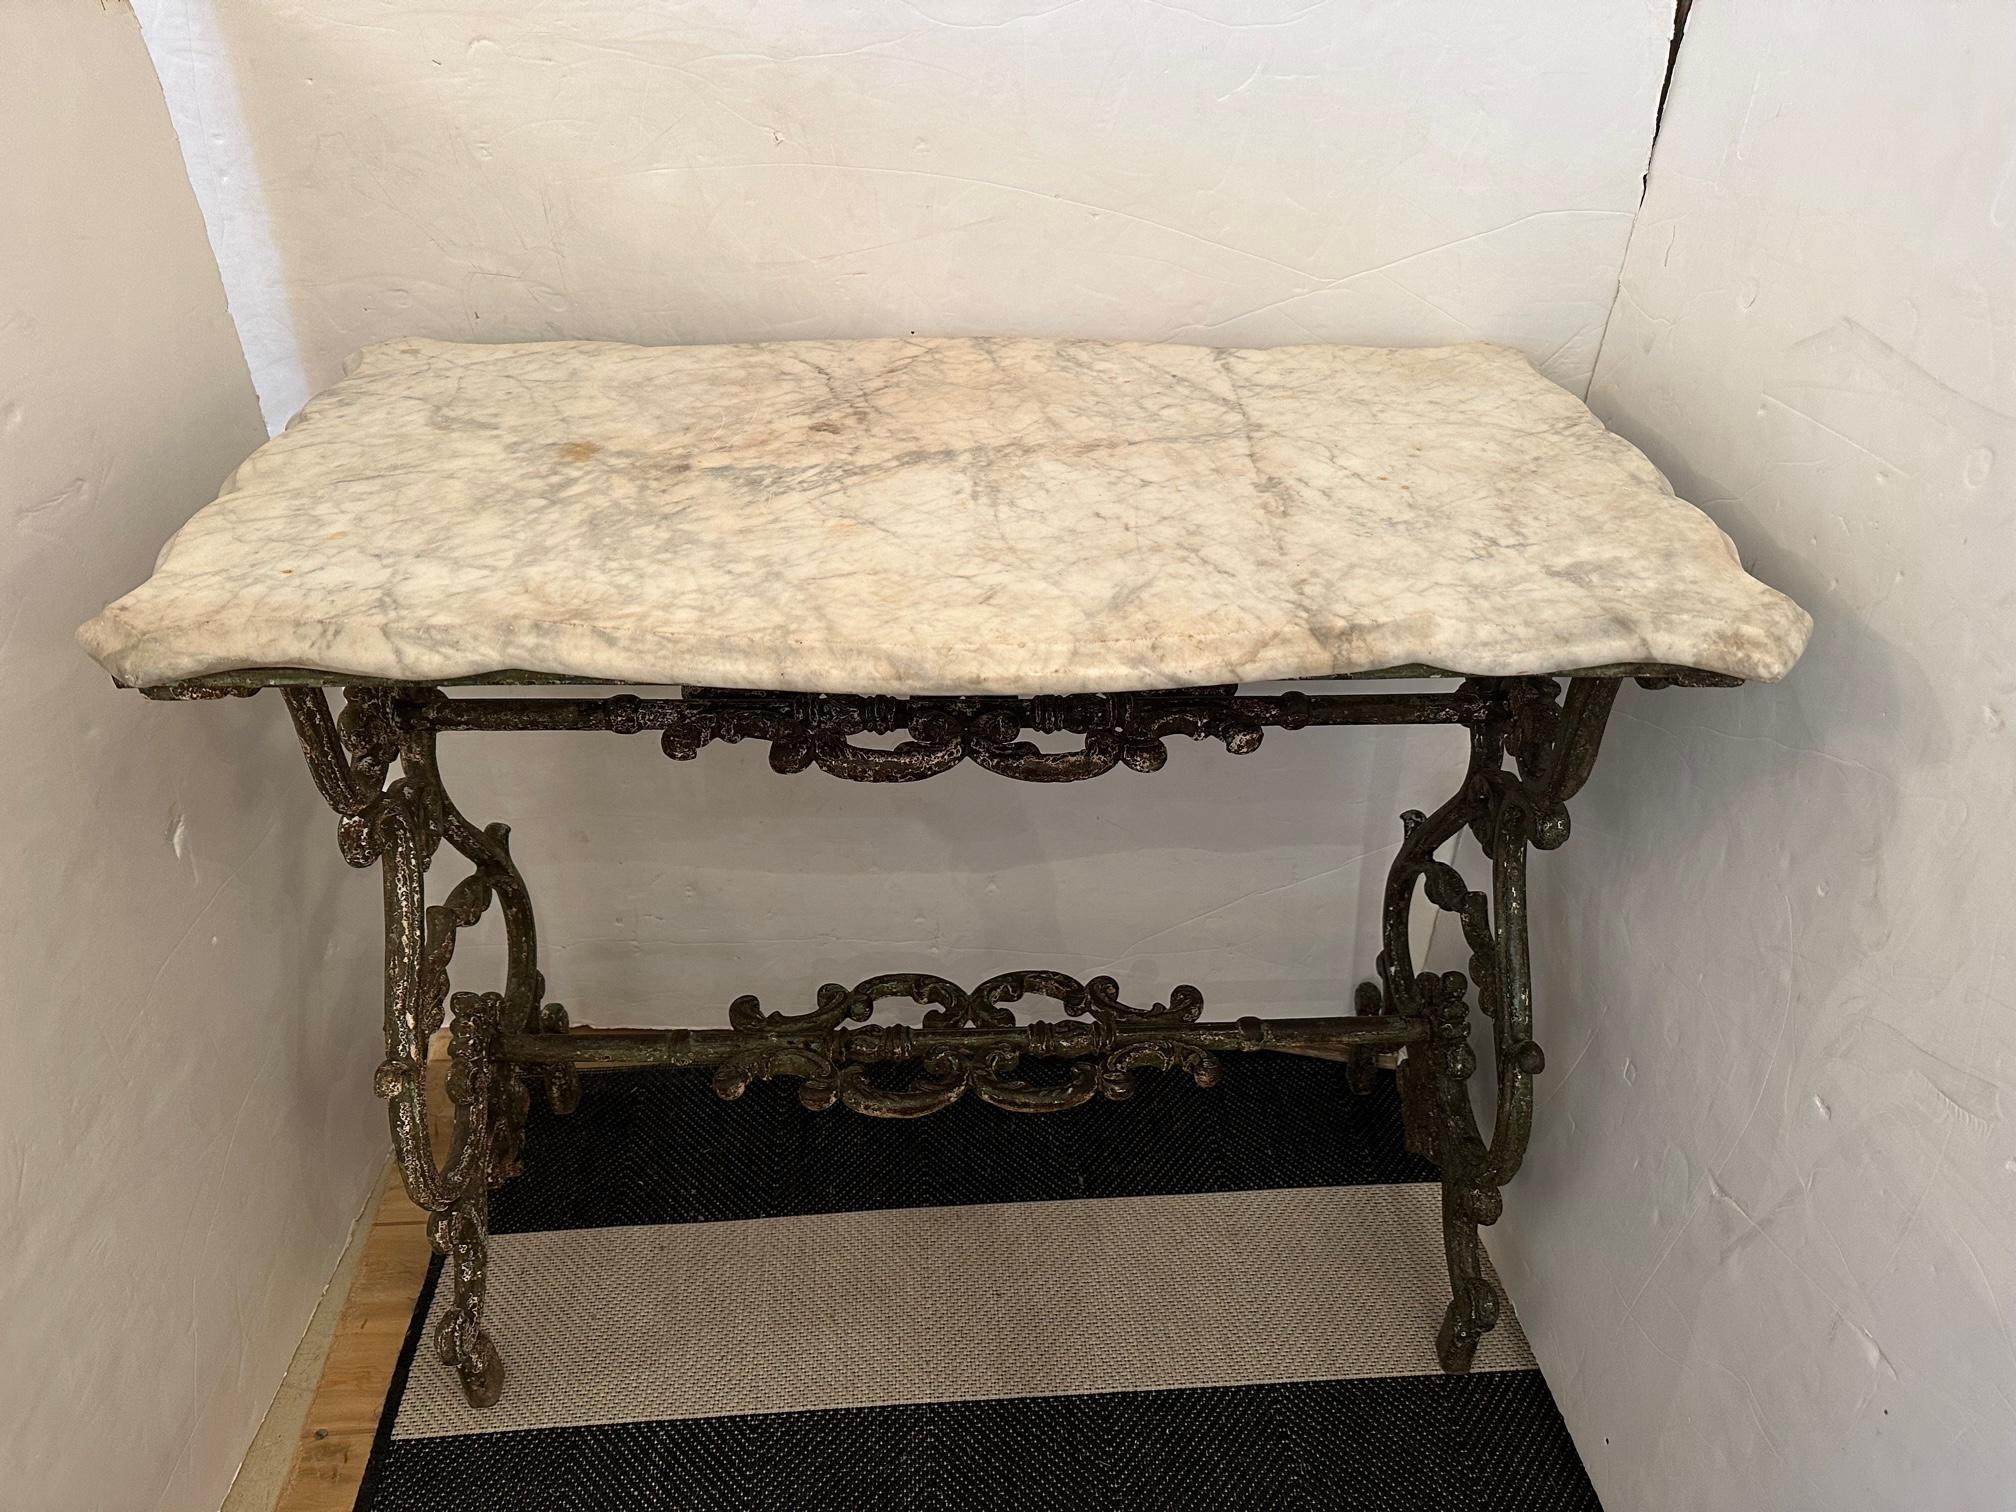 Rare Antique Paris Flea Market Cast Iron & Marble Patisserie Table Console For Sale 6